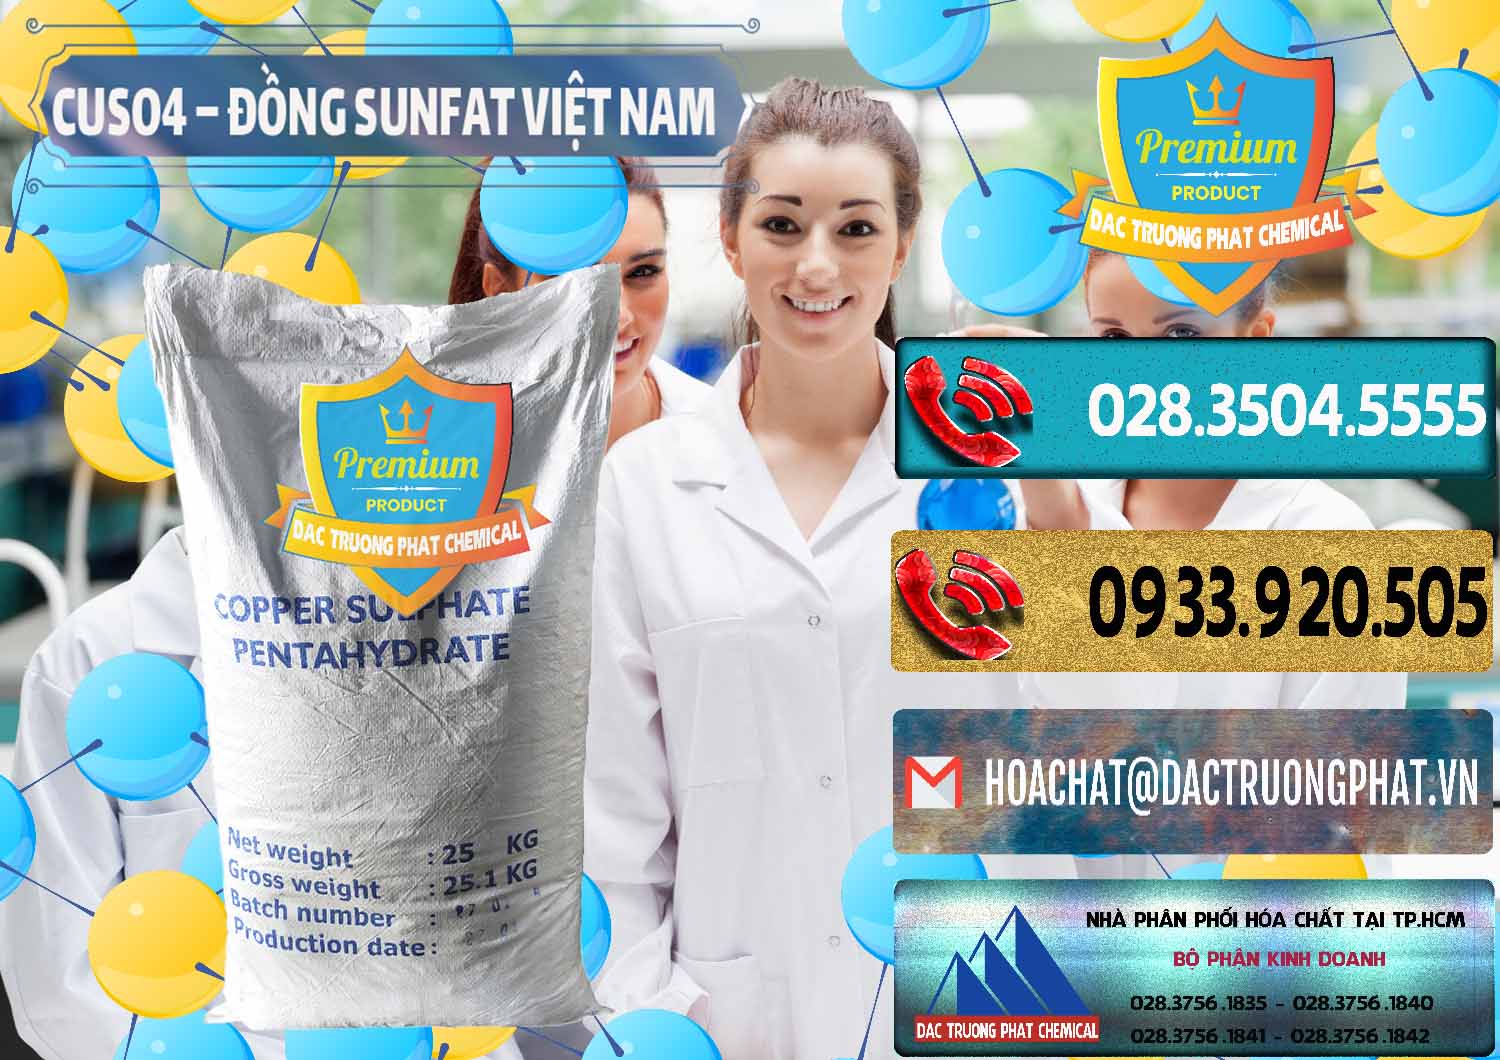 Công ty chuyên phân phối - bán CuSO4 – Đồng Sunfat Dạng Bột Việt Nam - 0196 - Đơn vị chuyên kinh doanh và phân phối hóa chất tại TP.HCM - hoachatdetnhuom.com